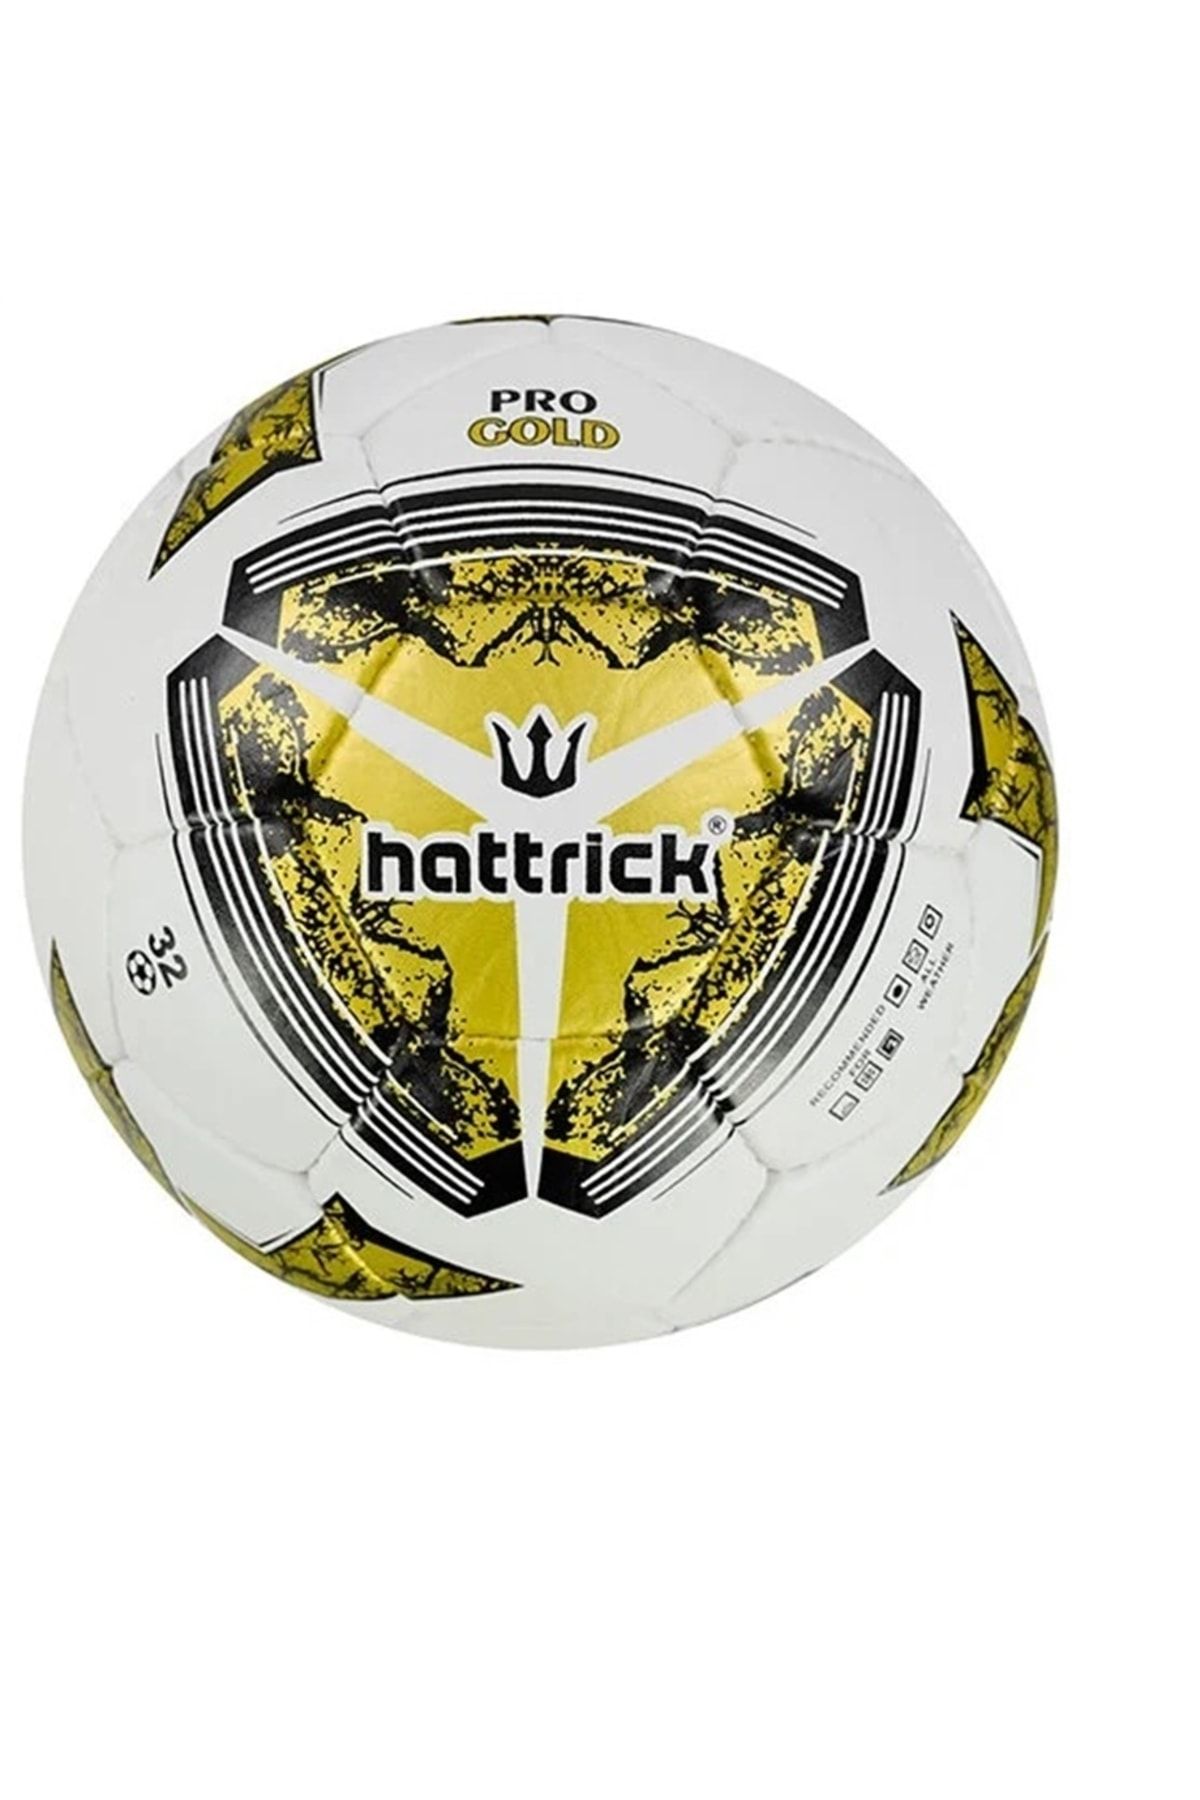 Hattrick Pro Gold El Dikişli 5 No Futbol Topu